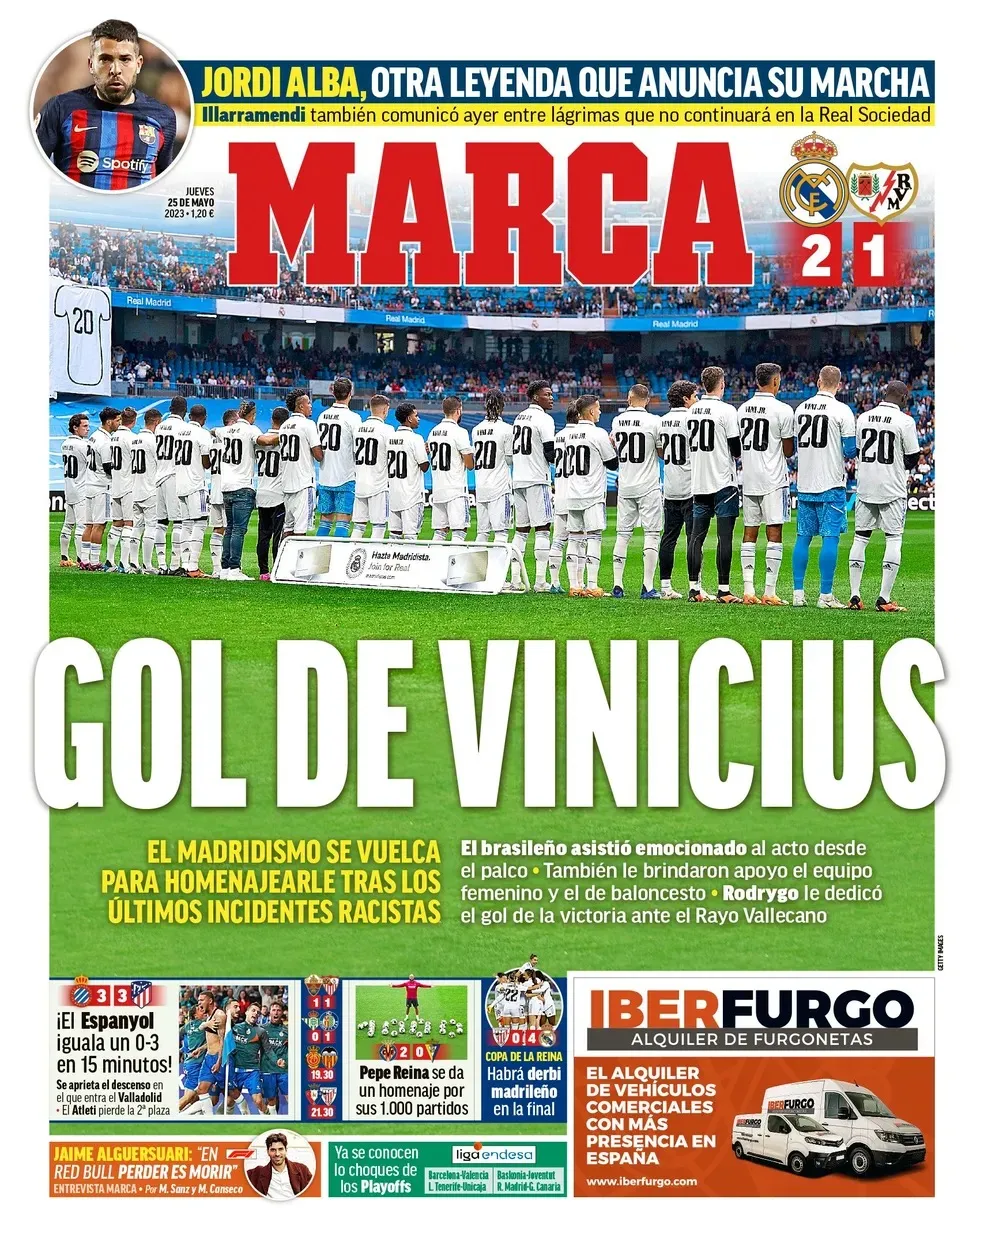 Jornal descreve homenagem como "Gol de Vinicius"